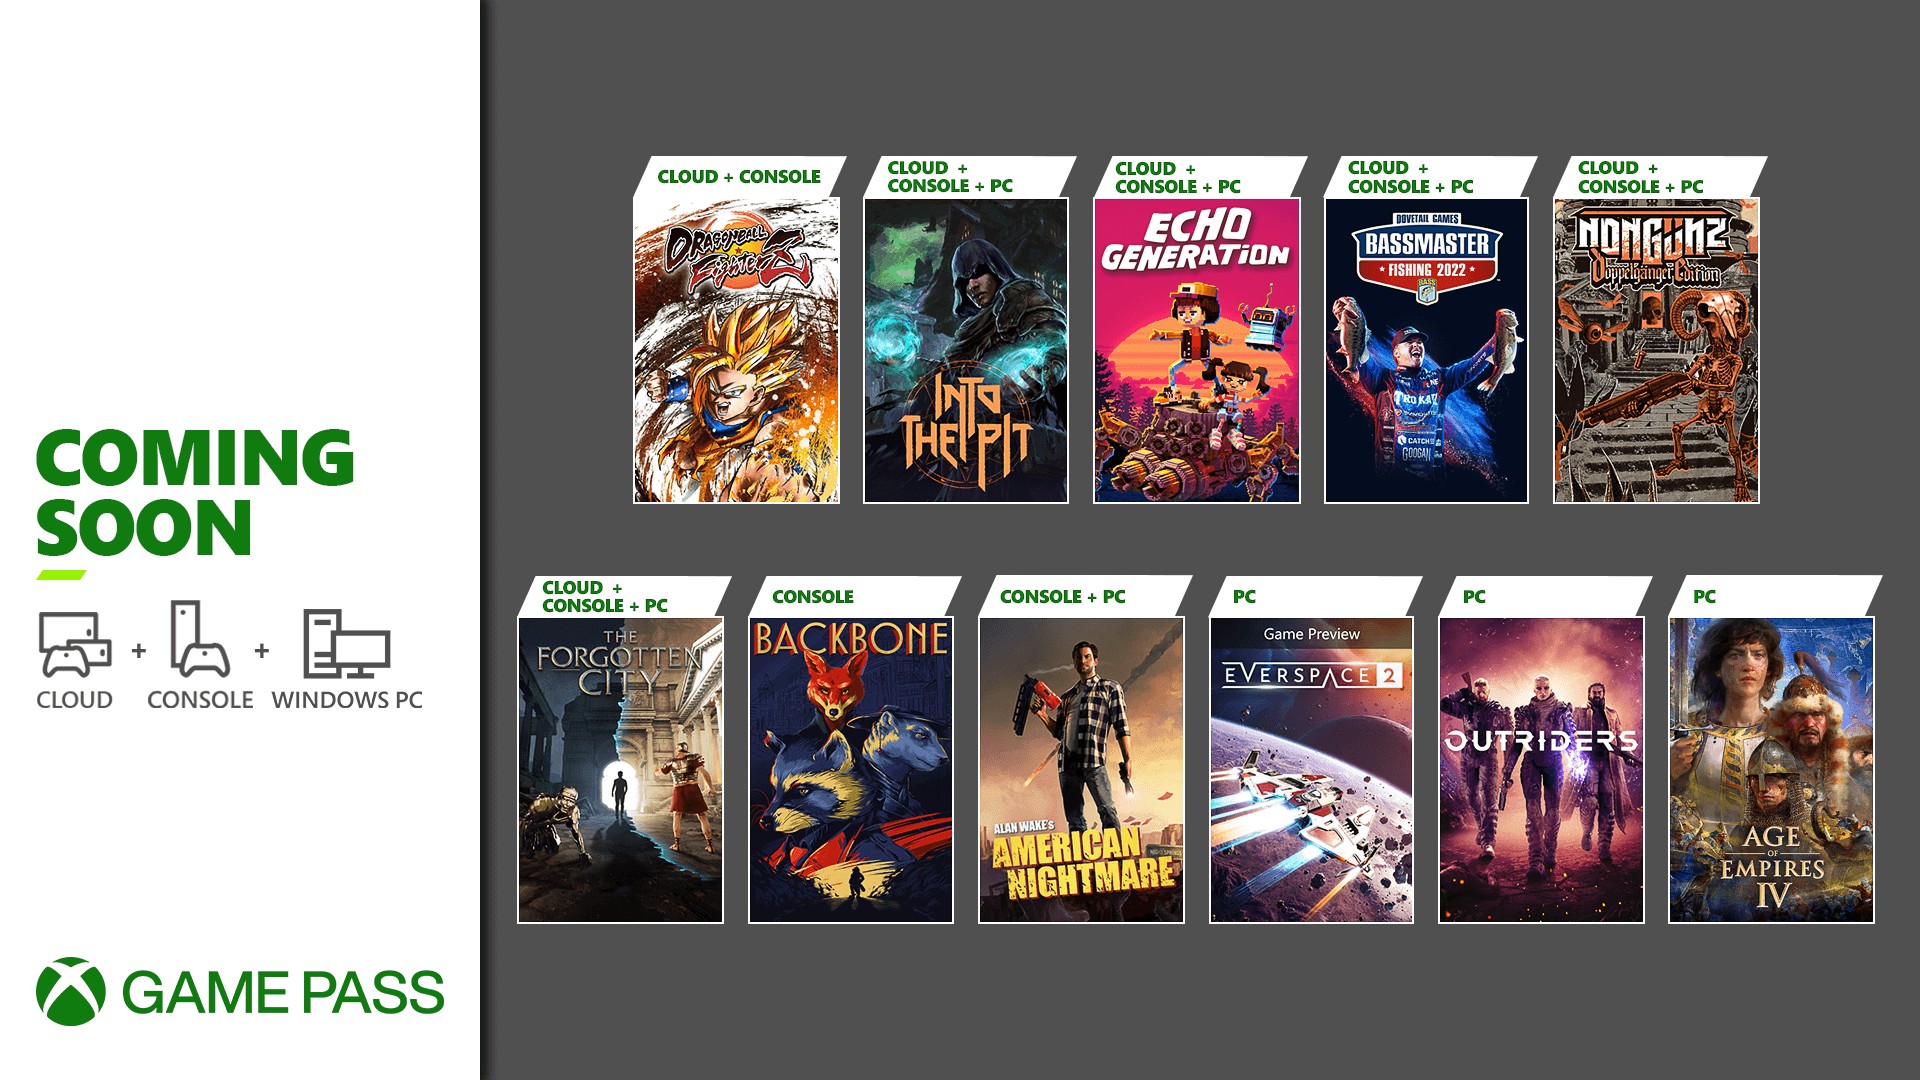 Confira os jogos do Xbox Box Game Pass que podem ser jogados no celular